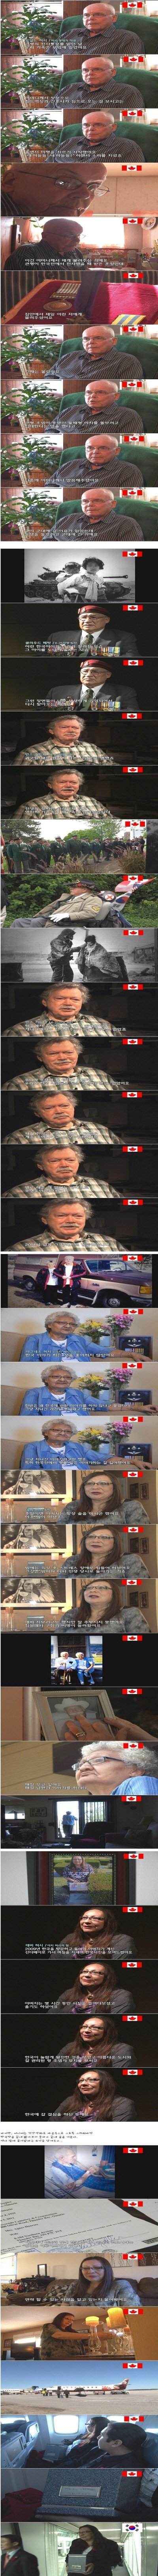 크기변환_625 특집 다큐 - 한국을 지킨 캐나다 형제 '허시 형제 이야기' 2.jpg